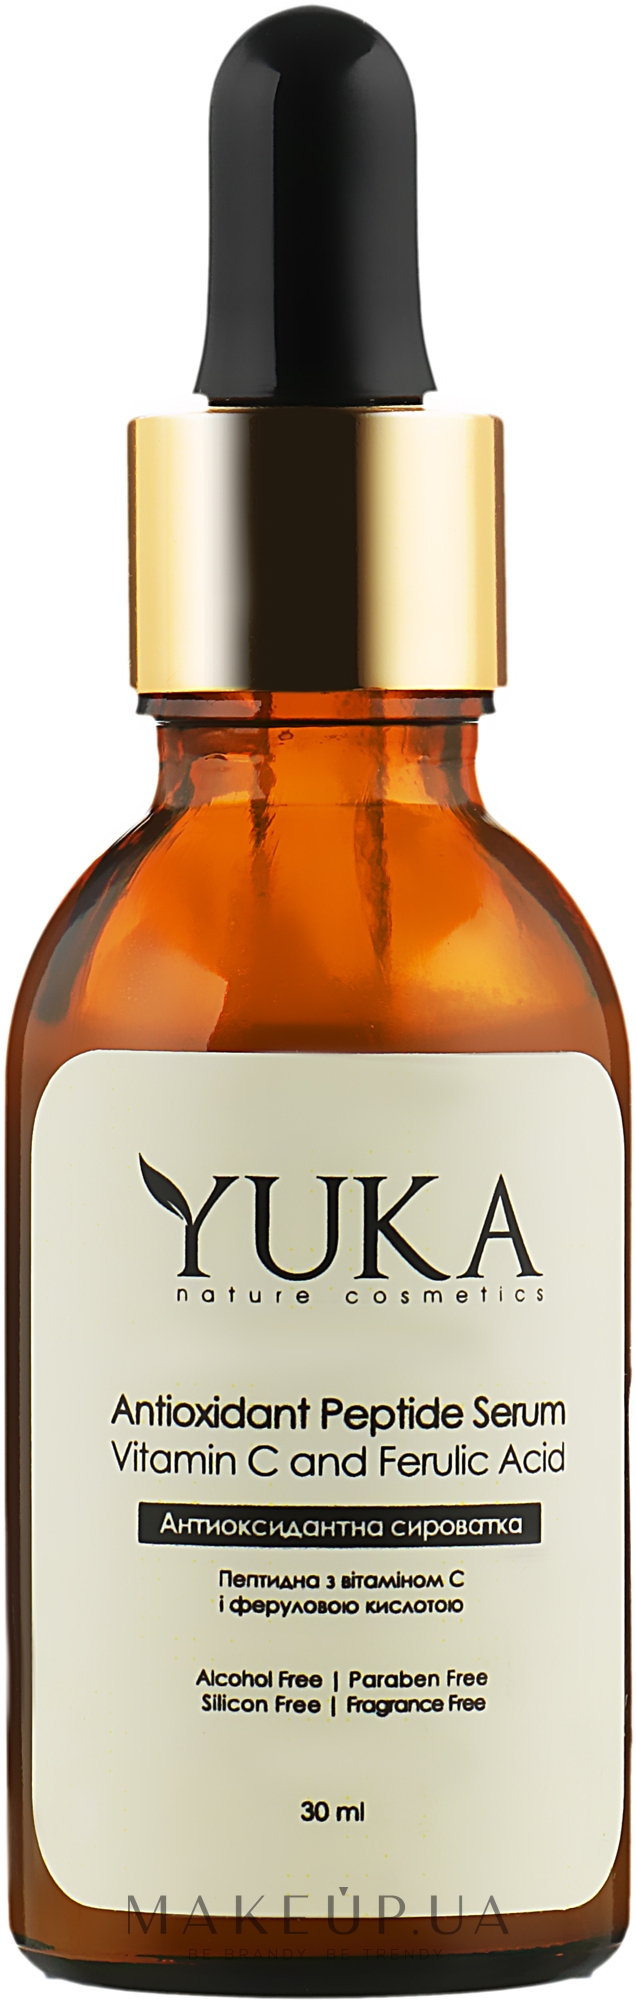 Антиоксидантная сыворотка c витамином С и феруловой кислотой - Yuka Antioxidant Peptide Serum  — фото 30ml